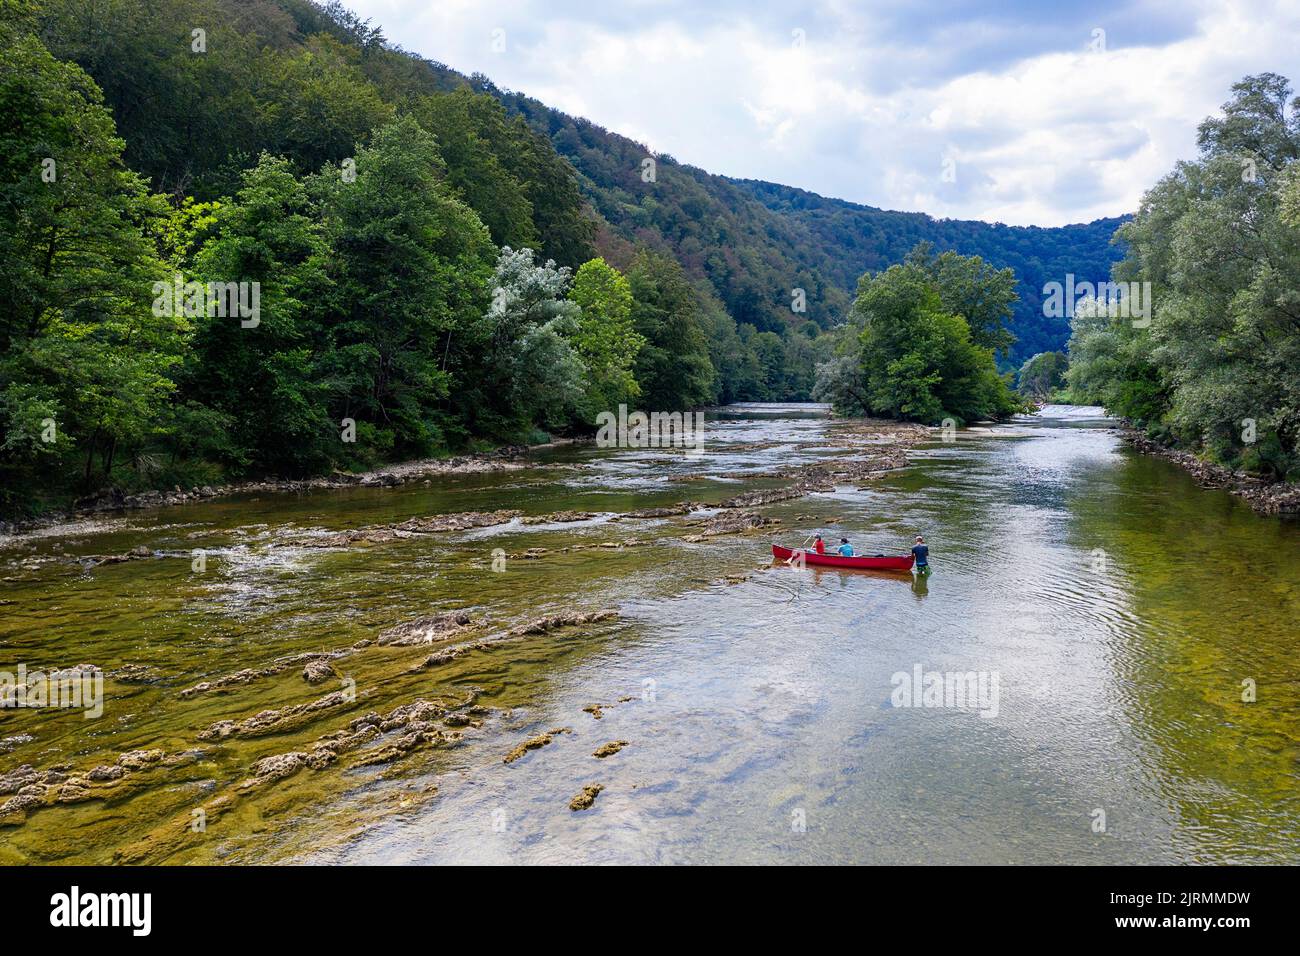 Mothen und Sohn, Touristen im Urlaub, auf einer Kanutour, Paddeln auf einem wunderschönen Fluss Kolpa, Grenzfluss zwischen Slowenien und Kroatien, Slowenien Stockfoto